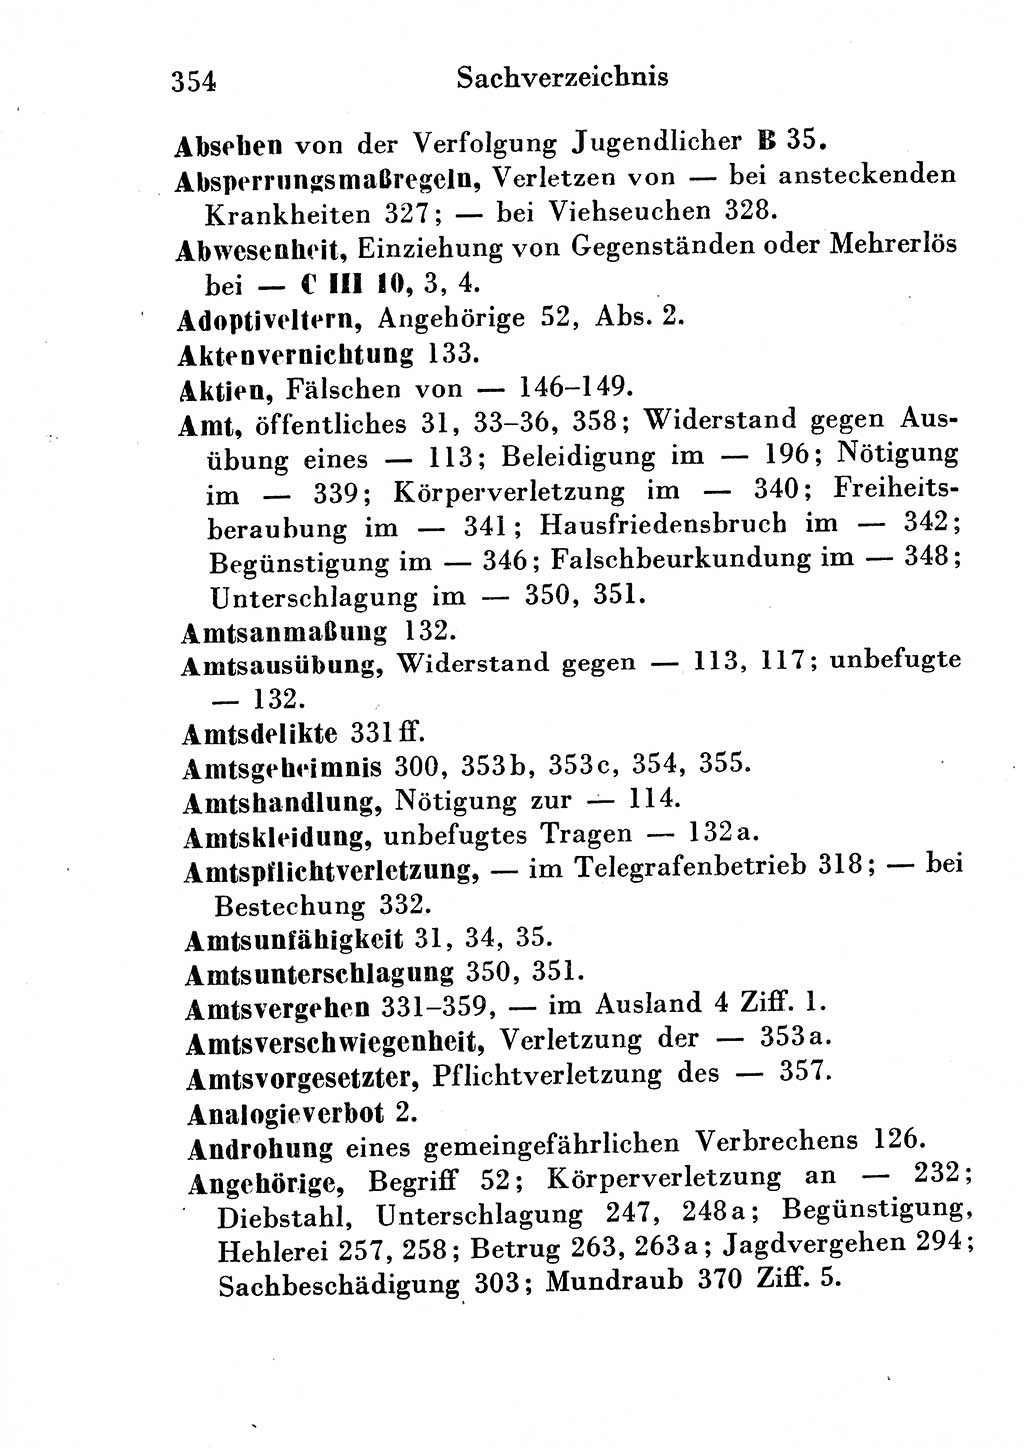 Strafgesetzbuch (StGB) und andere Strafgesetze [Deutsche Demokratische Republik (DDR)] 1954, Seite 354 (StGB Strafges. DDR 1954, S. 354)